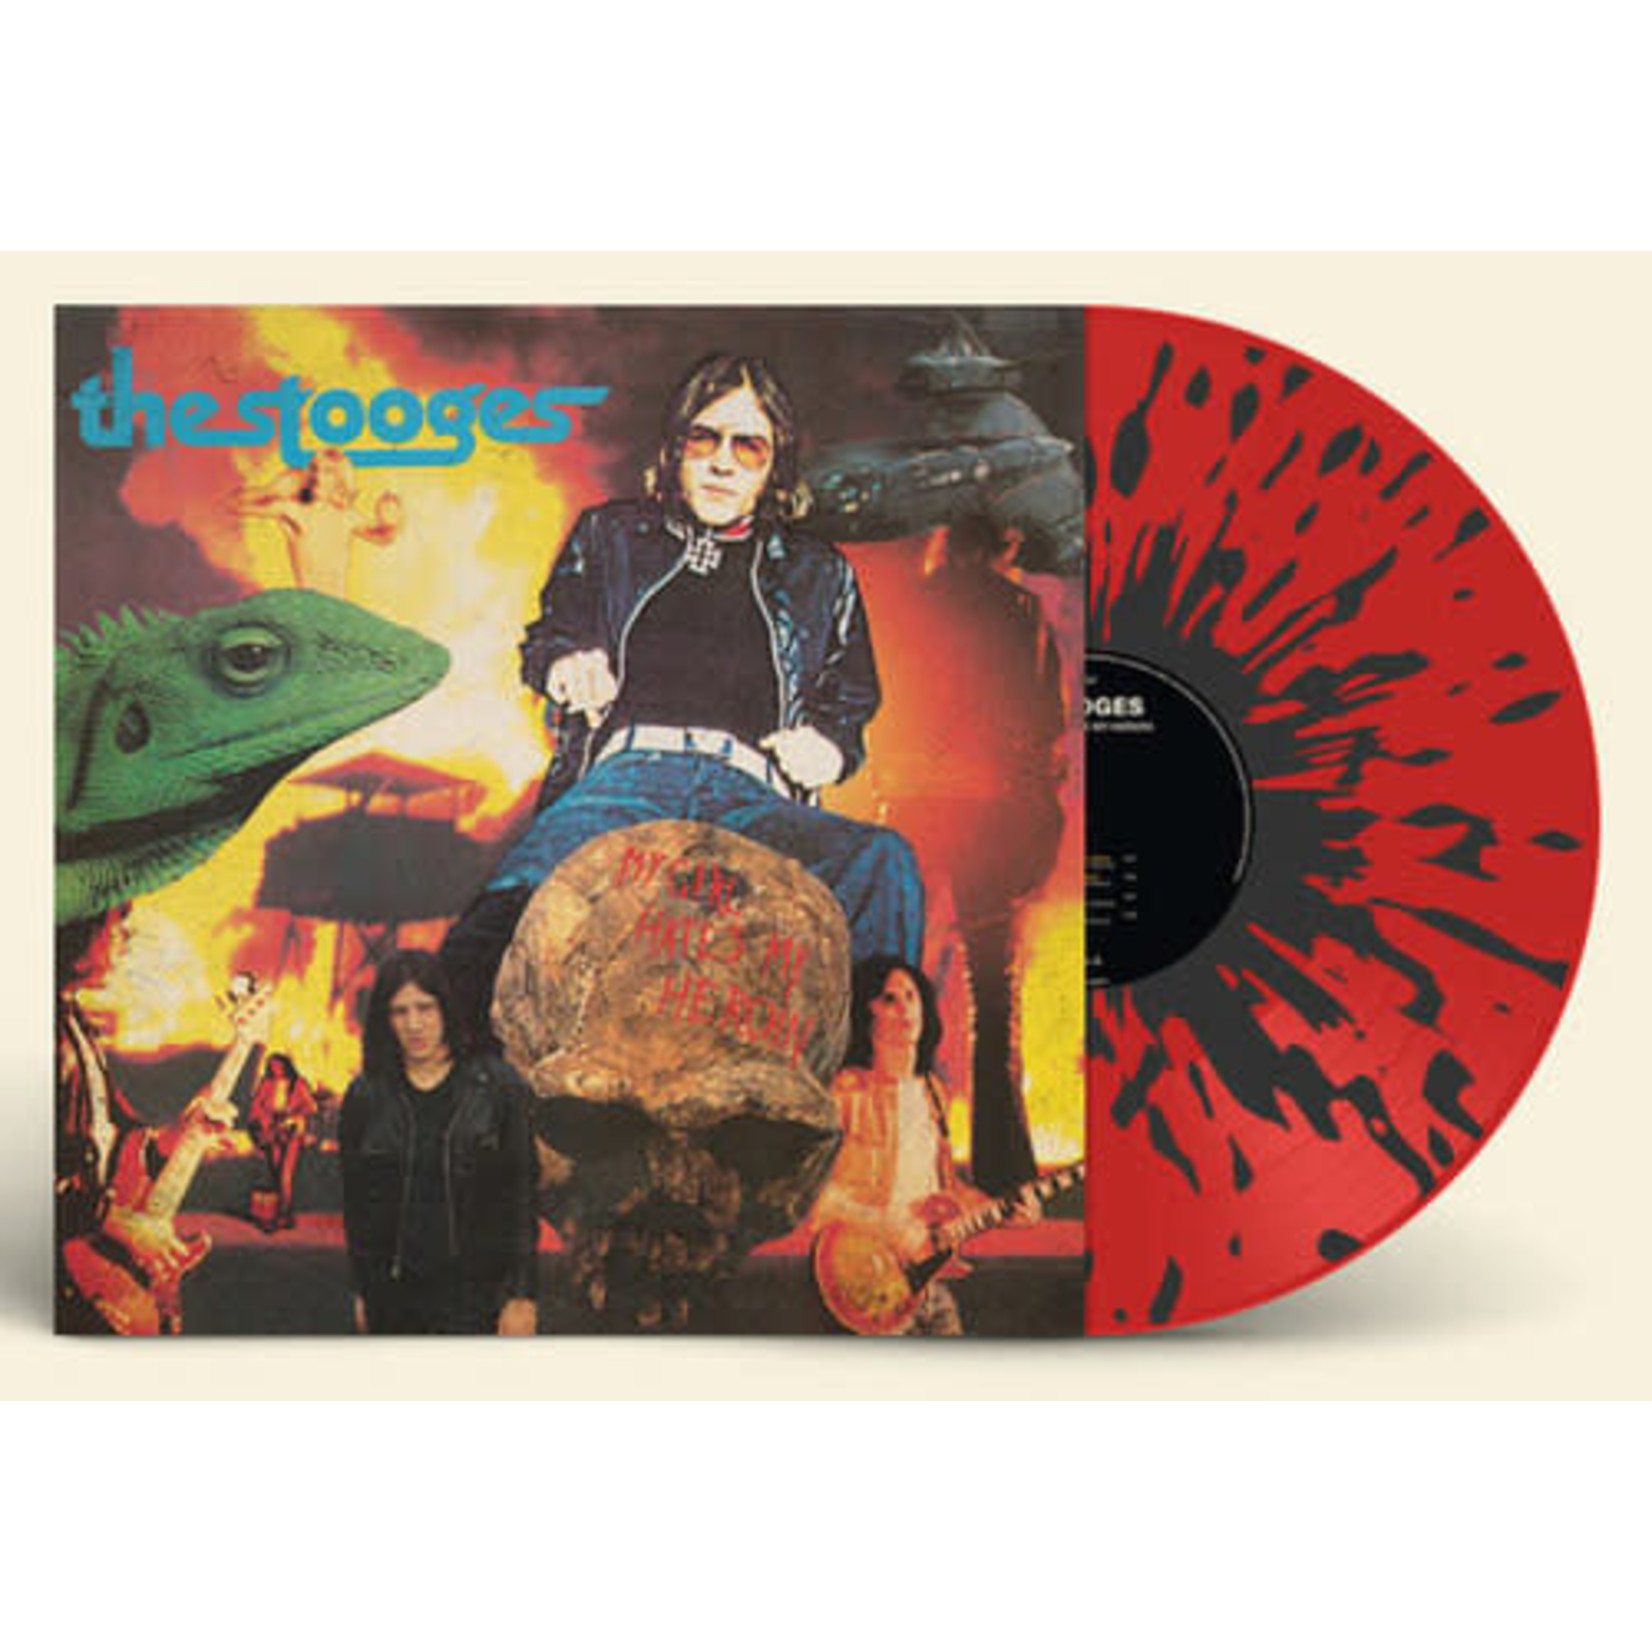 [New] Stooges - My Girl Hates My Heroin (red & black splatter vinyl)